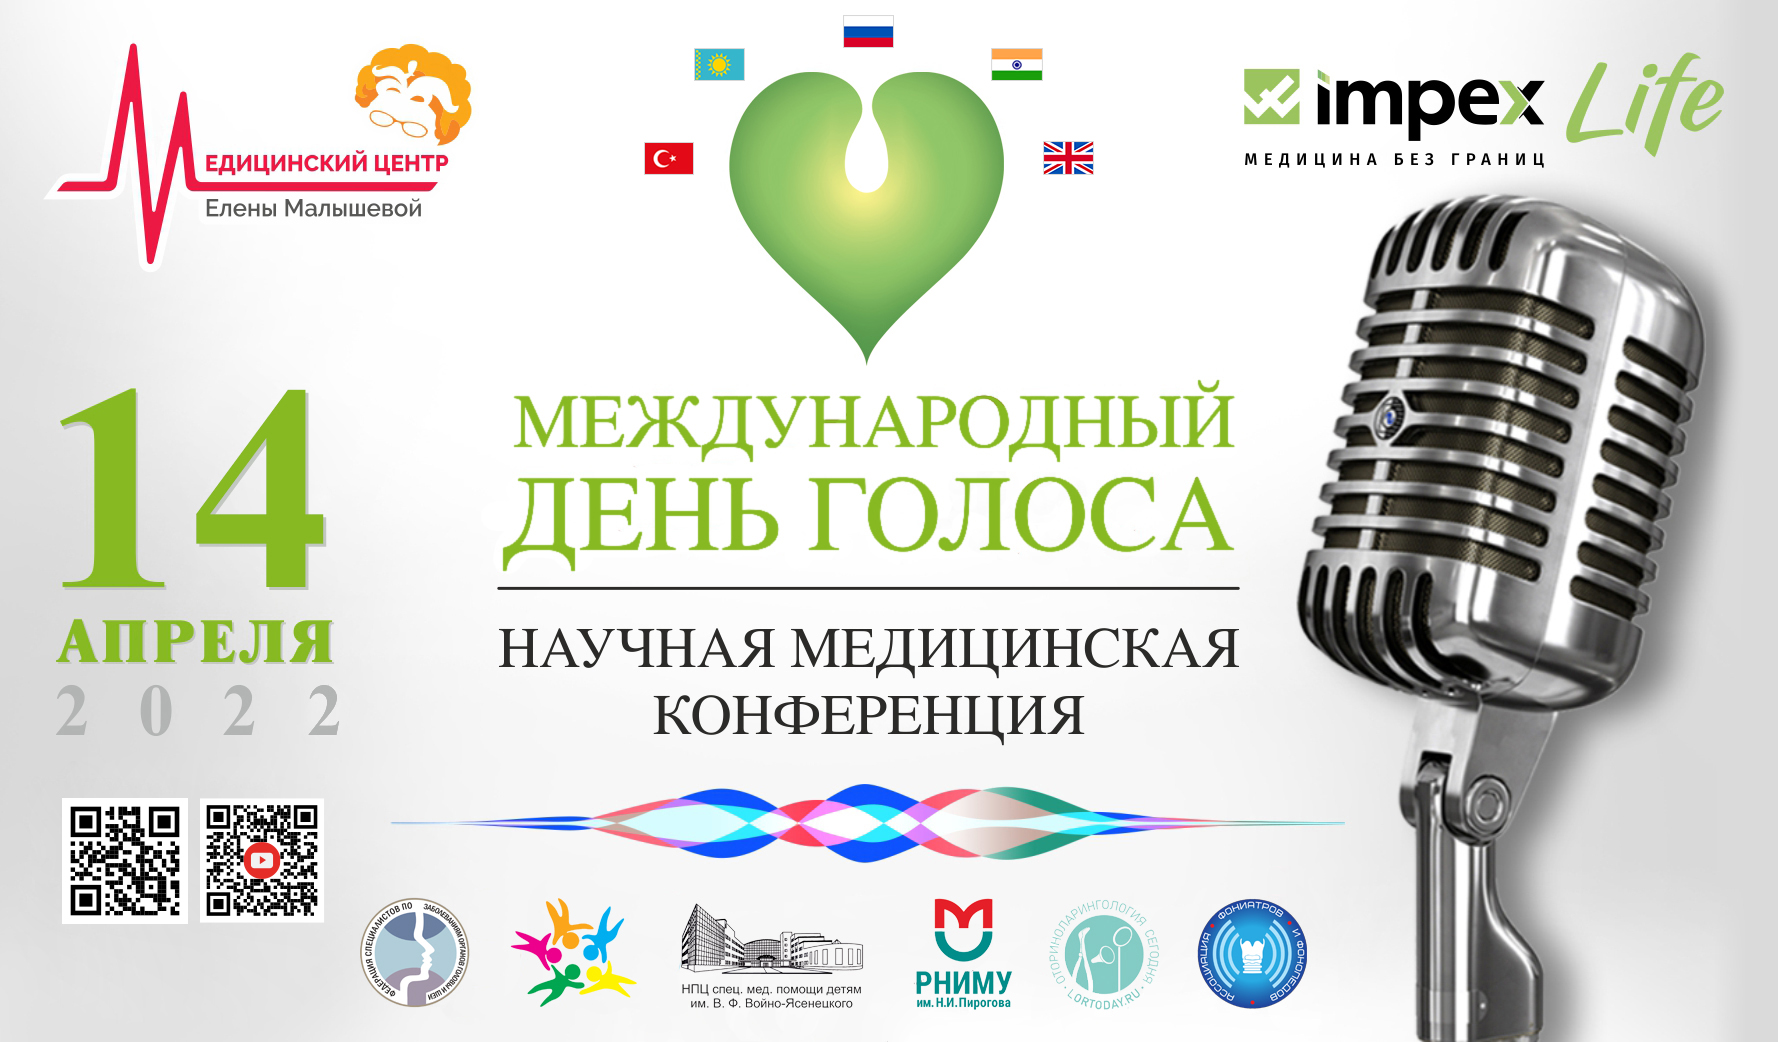 Приглашаем Вас на научную медицинскую конференцию по ларингологии, посвященную международному Дню голоса 14.04.2022.